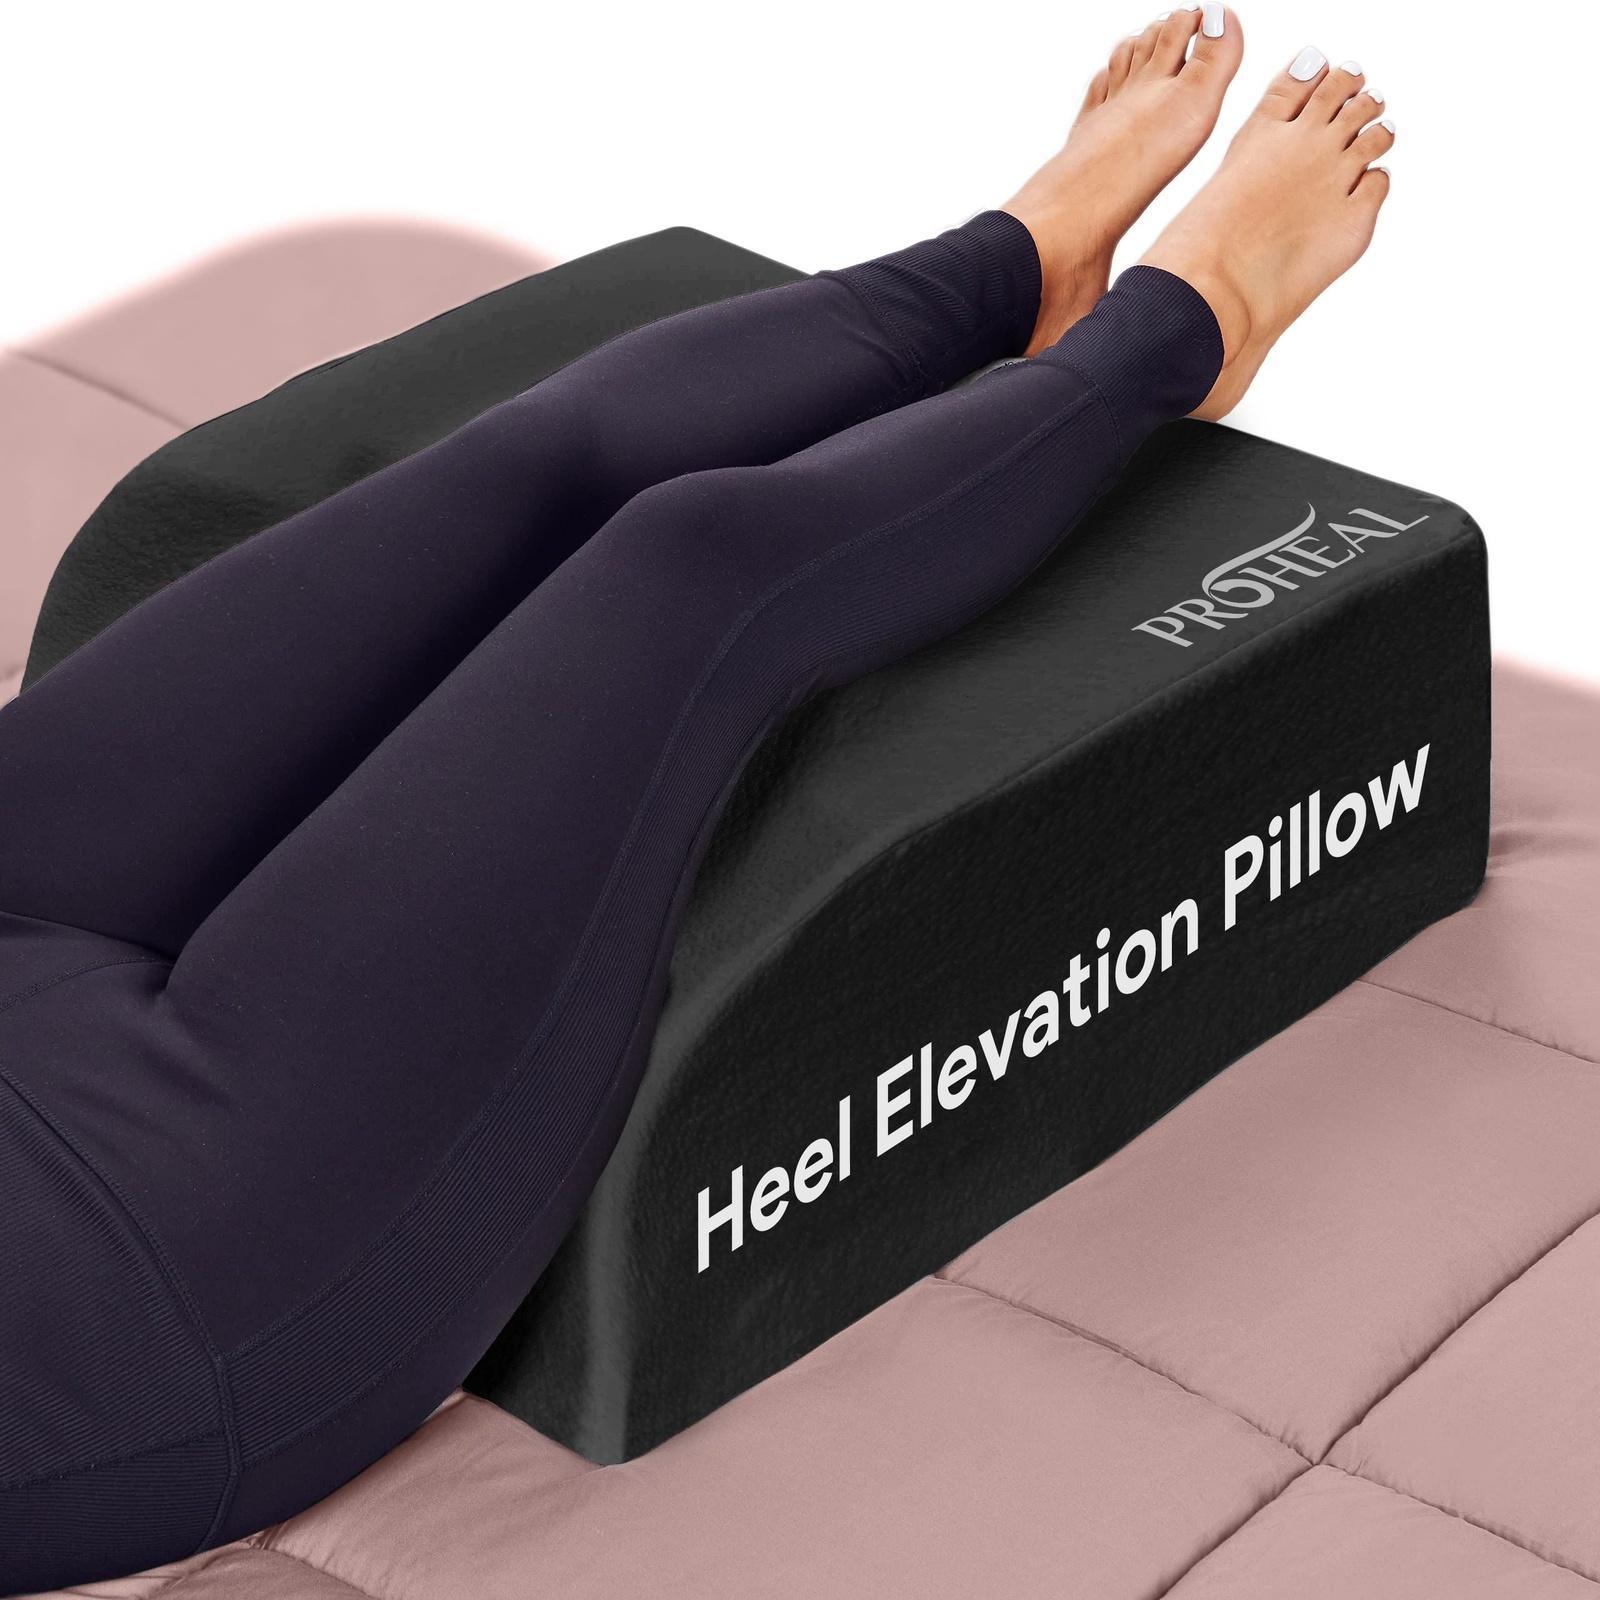  Leg Elevation Pillow - Leg Pillows for Sleeping